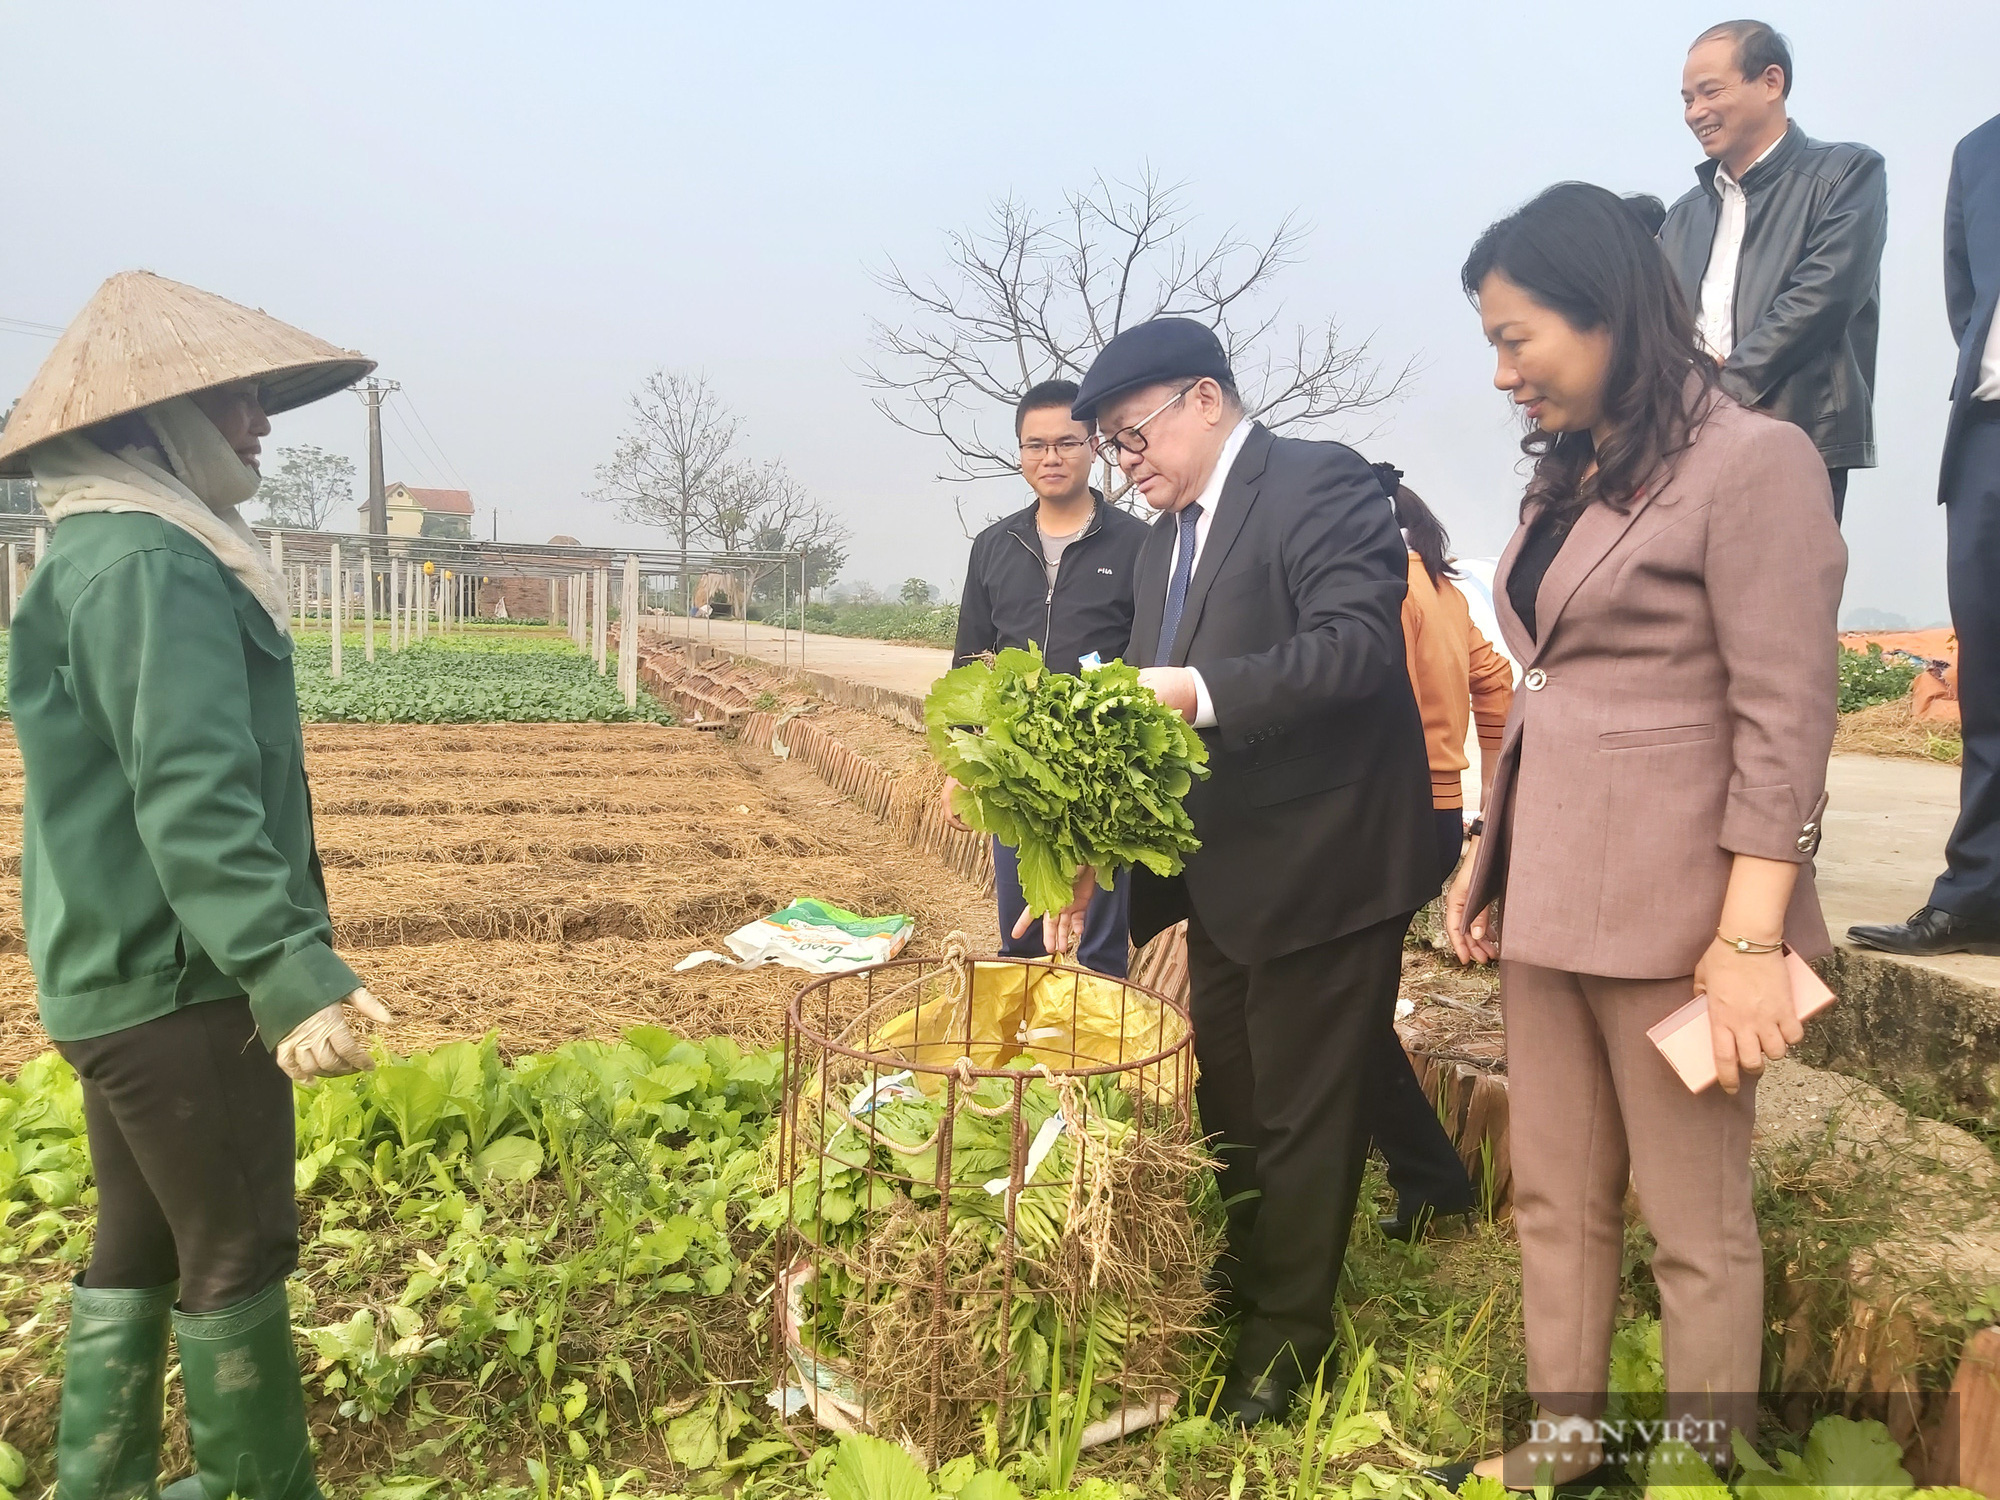 Phú Thọ: Chủ tịch Hội NDVN Thào Xuân Sùng xuống đồng, trò chuyện cùng nông dân về cách trồng rau an toàn - Ảnh 7.